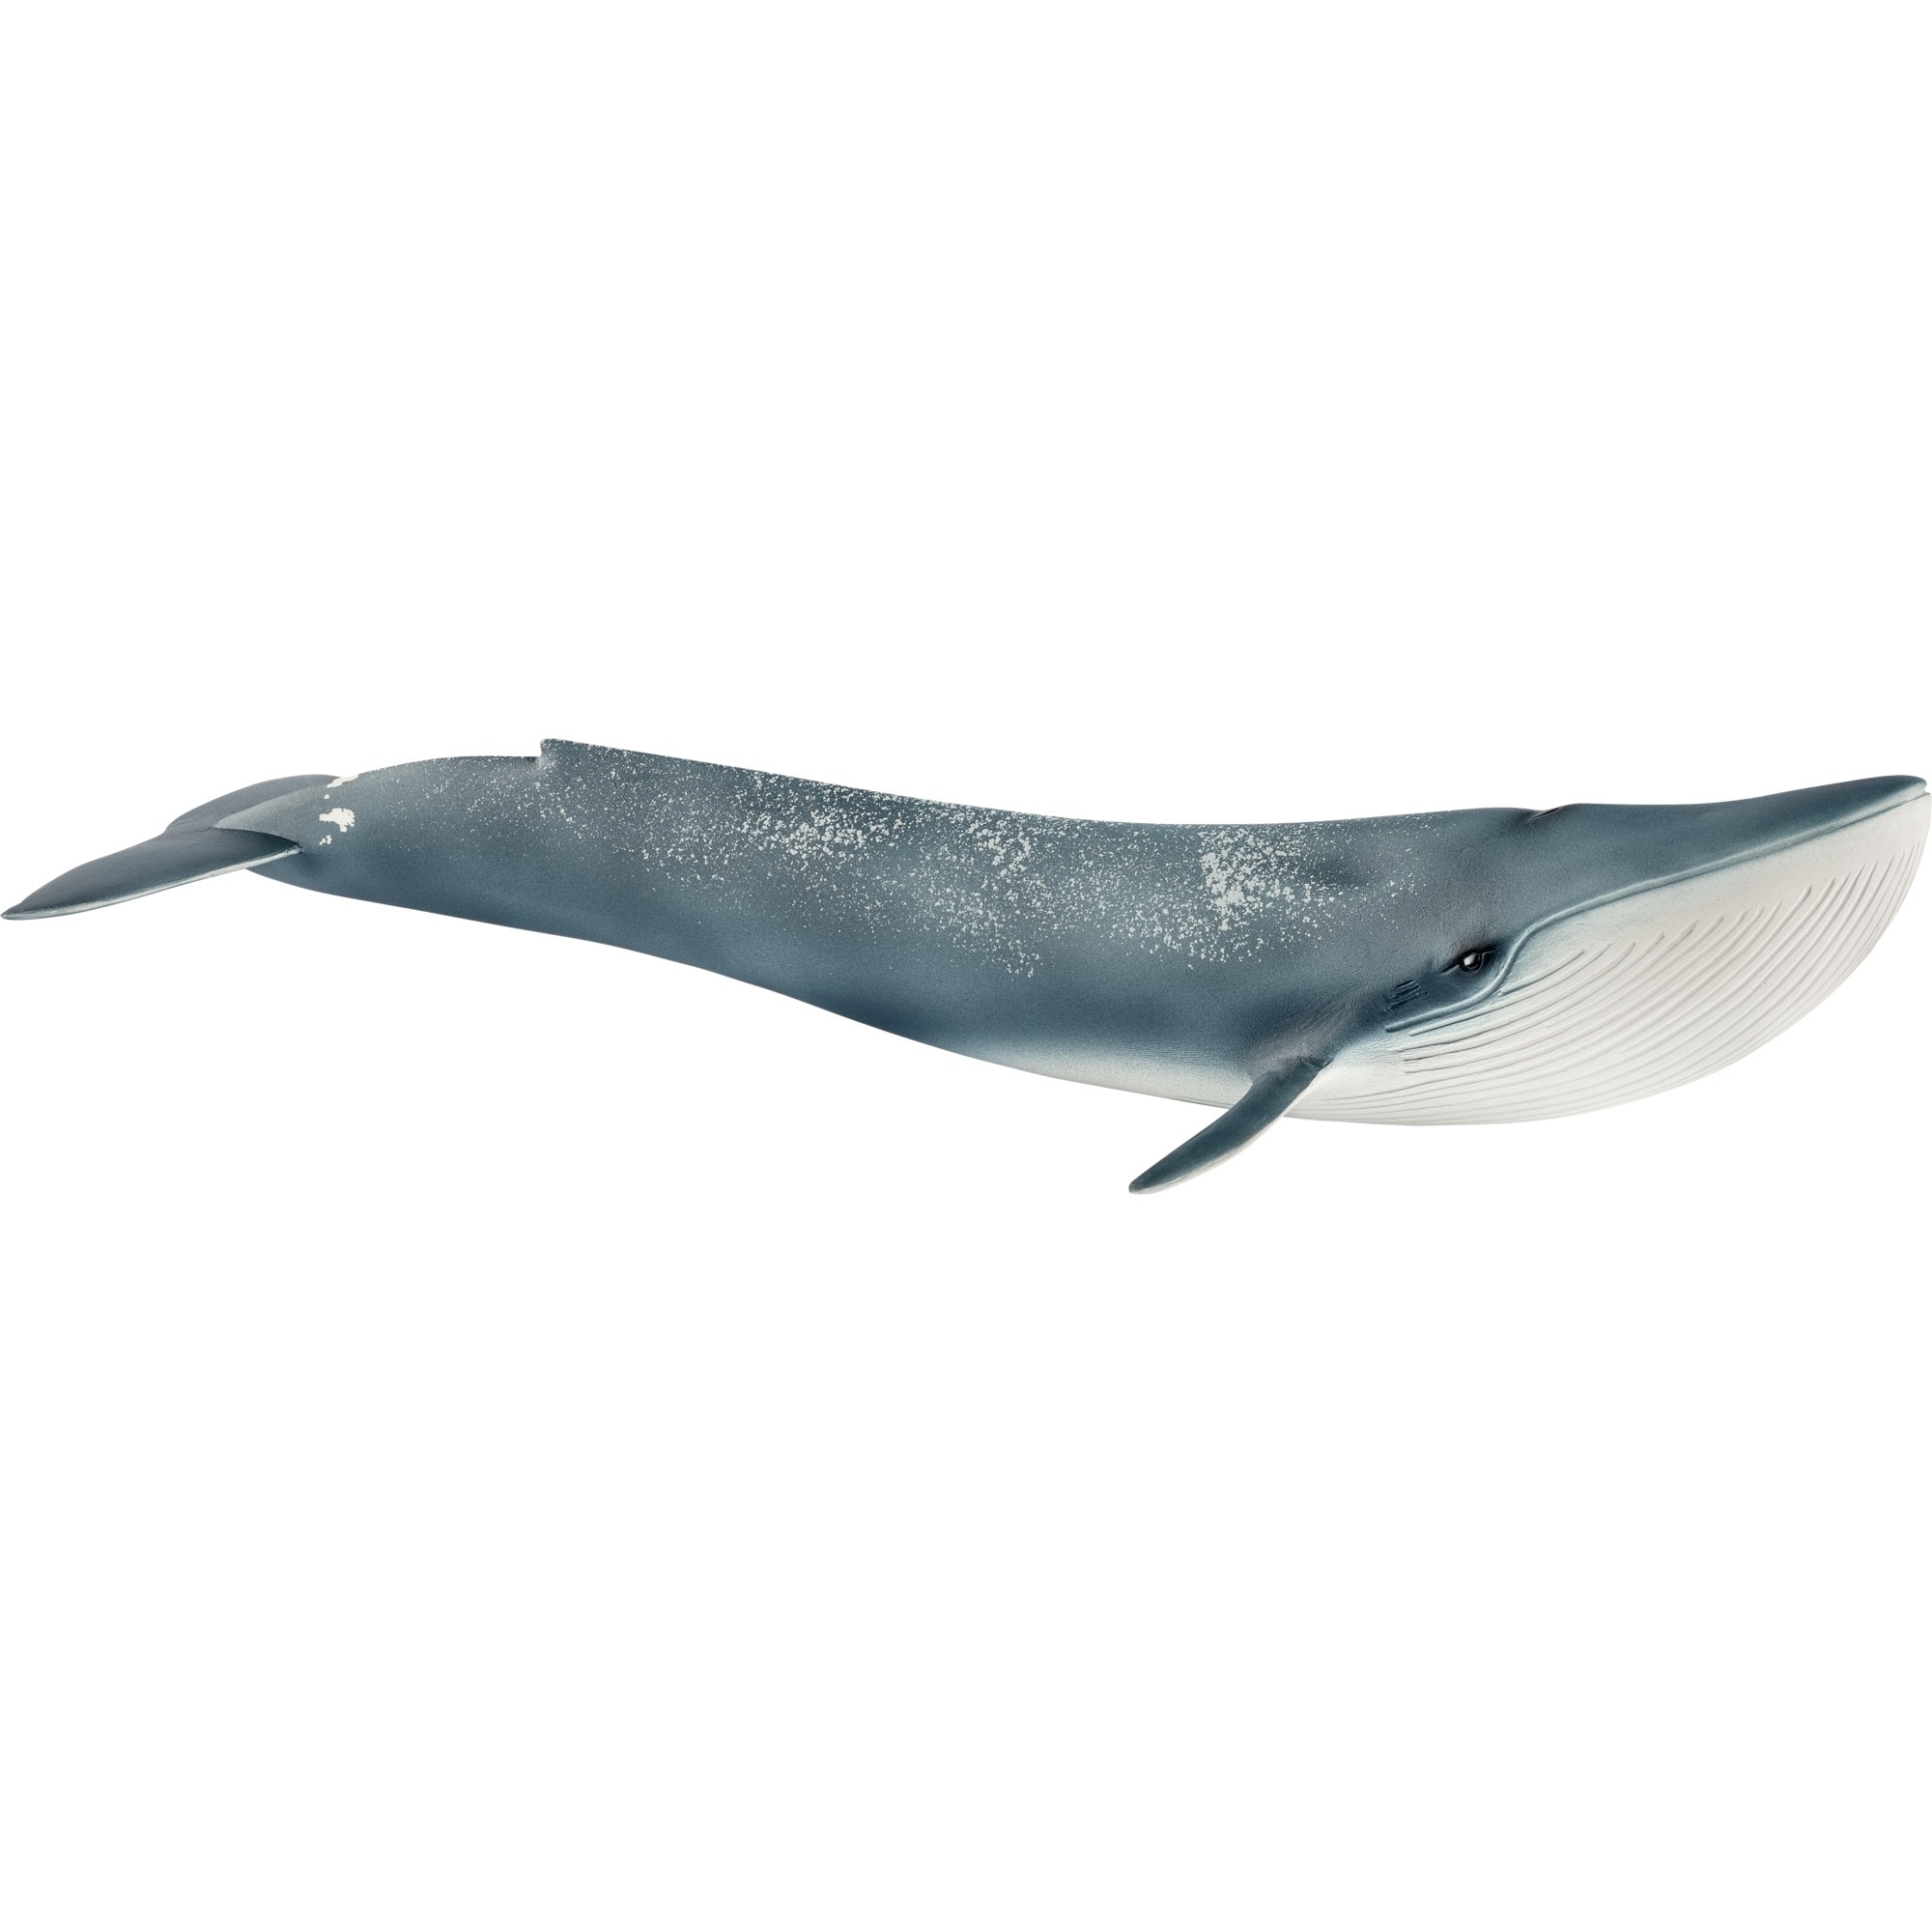 Image of Alternate - Blauwal, Spielfigur online einkaufen bei Alternate